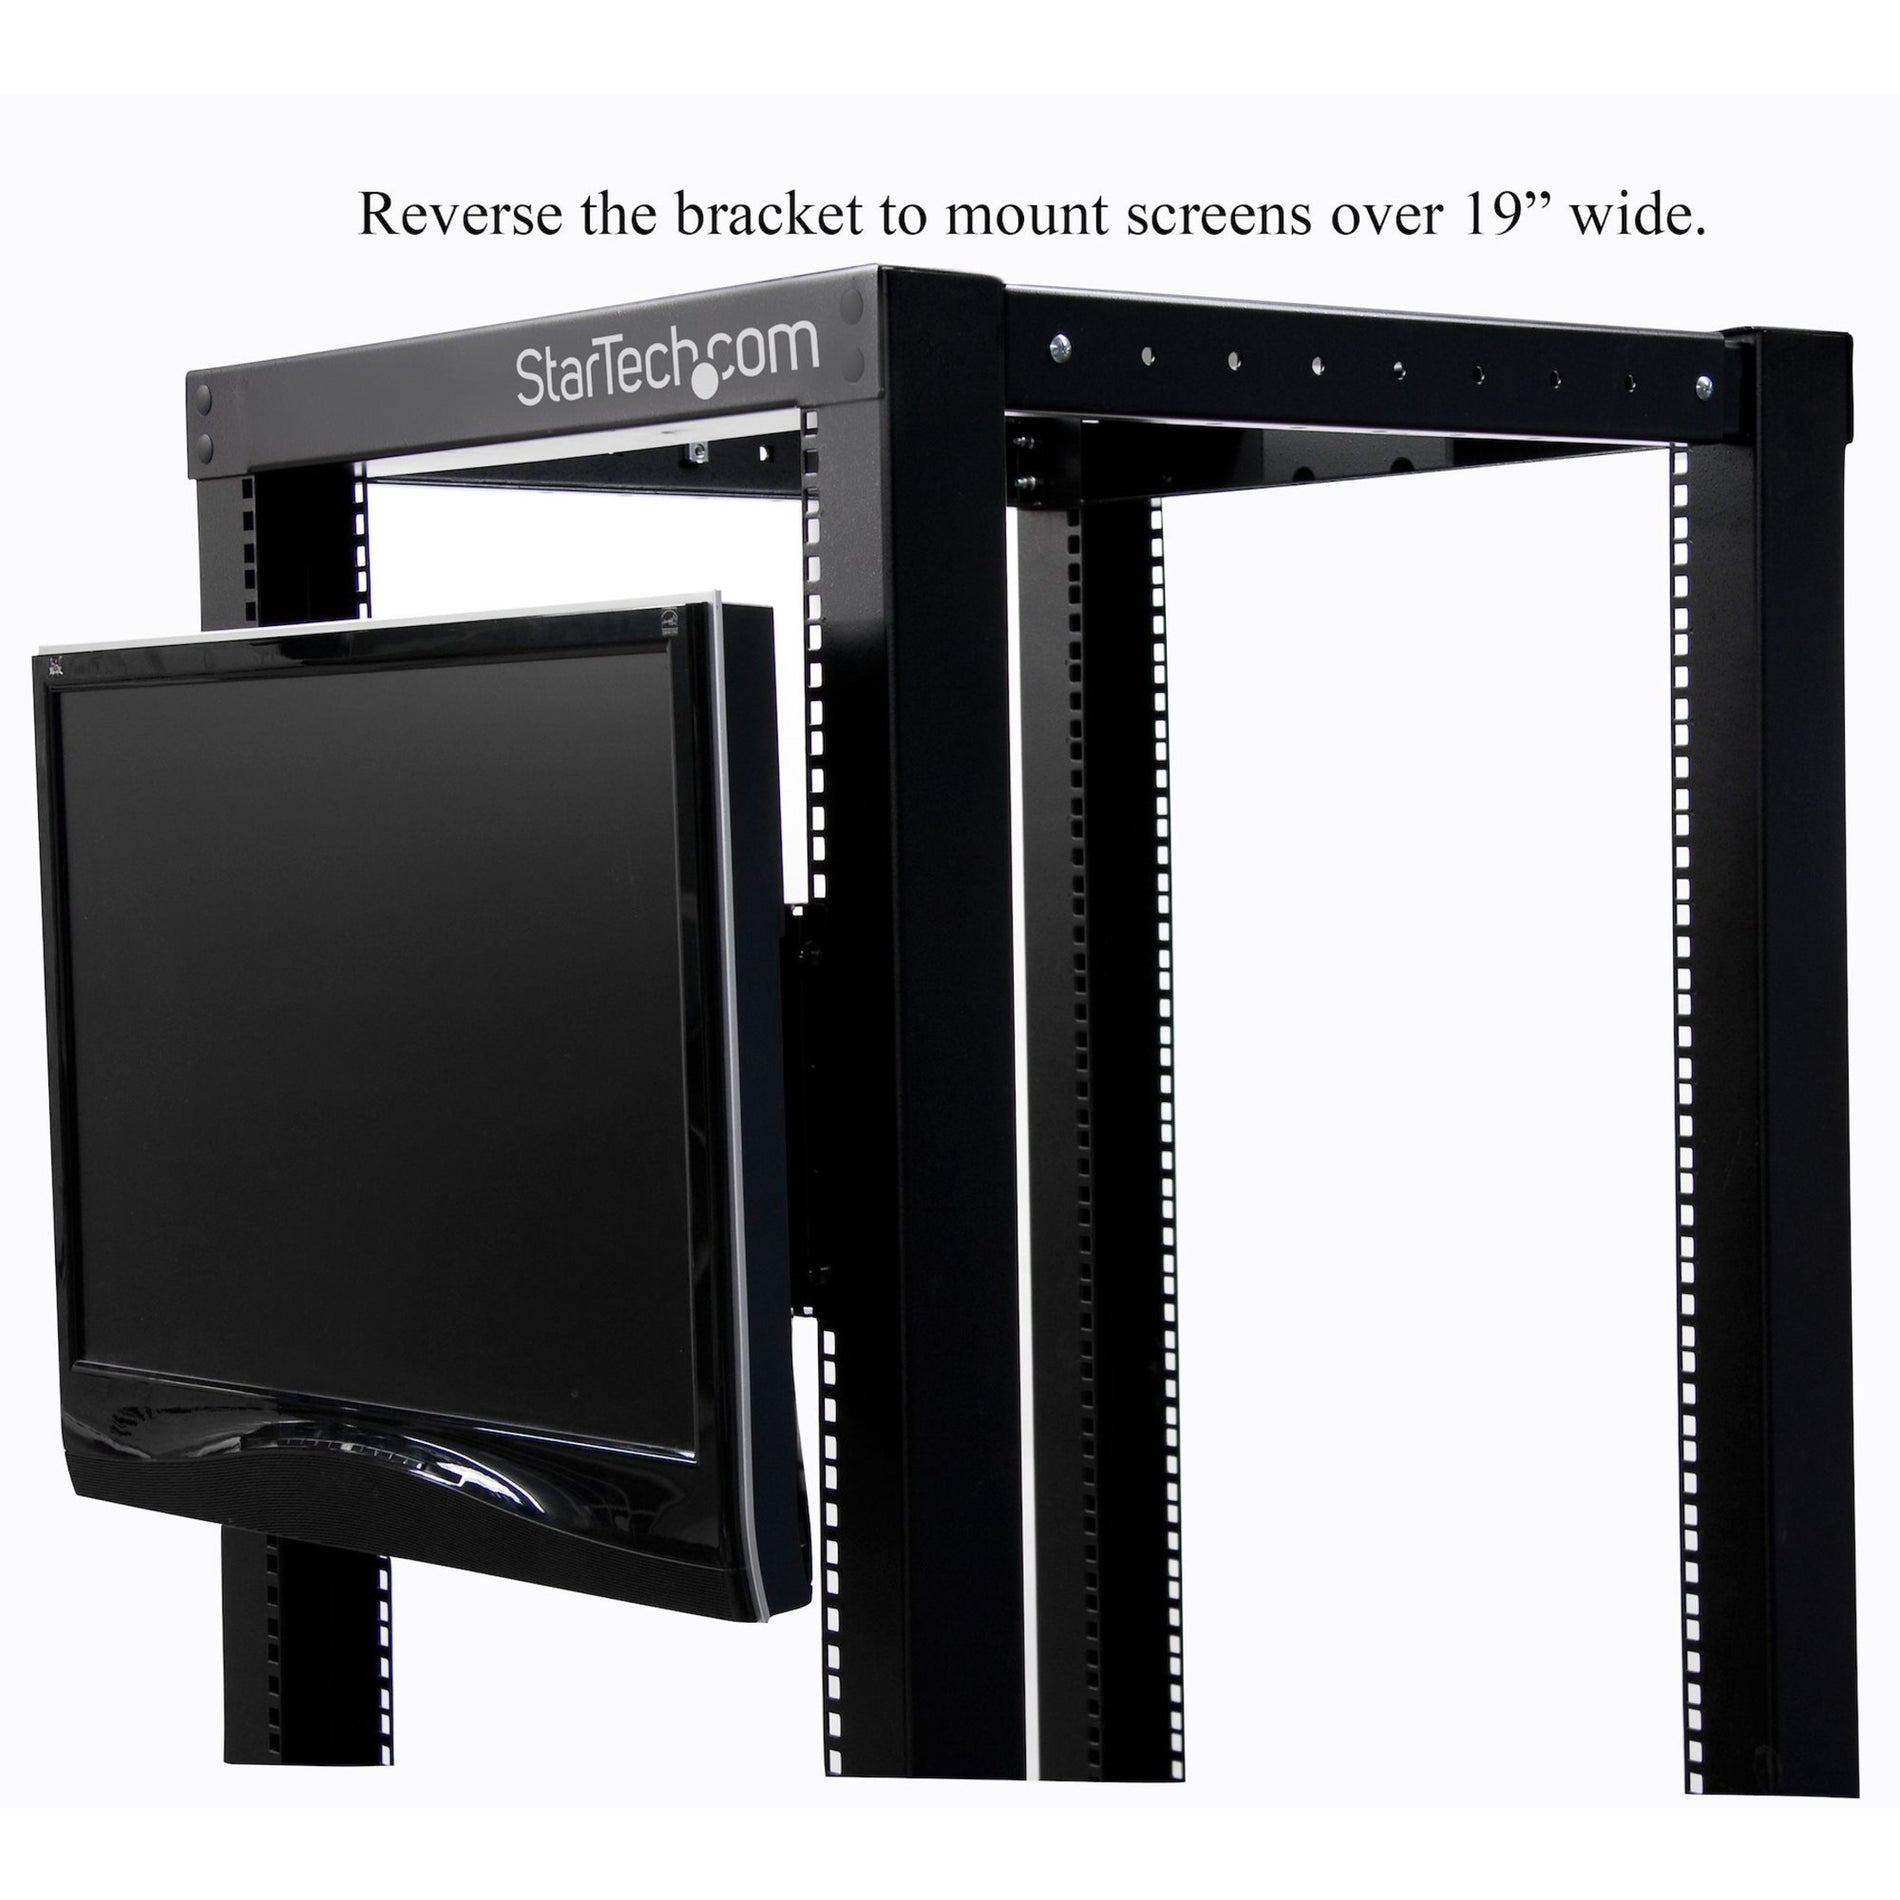 StarTech.com RKLCDBK Universal VESA Supporto di montaggio del monitor LCD per rack o armadietto da 19 pollici soluzione resistente e versatile.